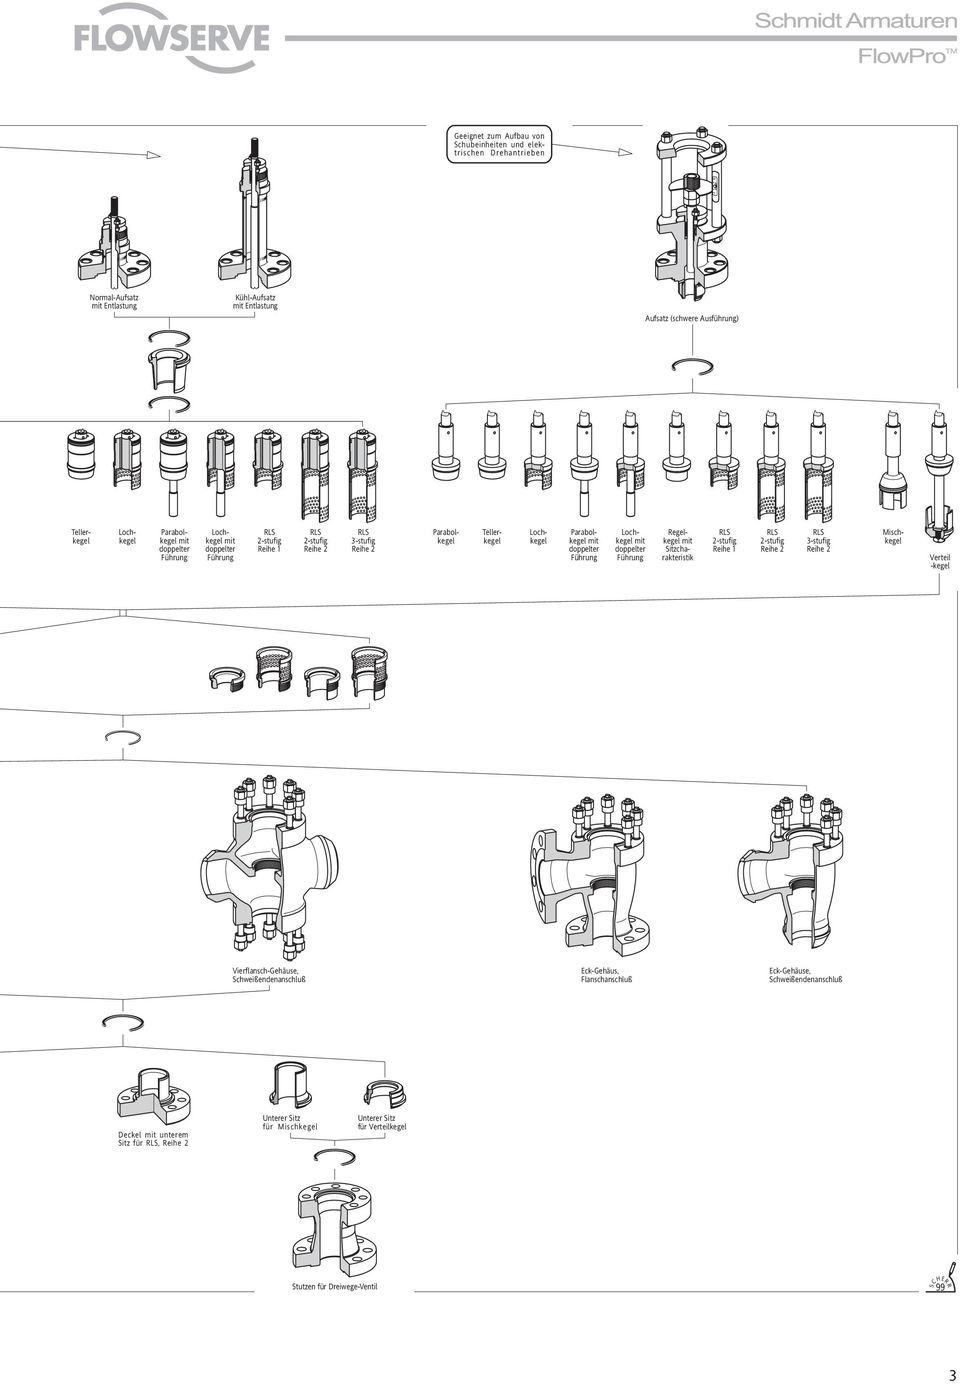 Lochkegel mit doppelter Führung RLS 2-stufig Reihe RLS 2-stufig Reihe 2 RLS 3-stufig Reihe 2 Regelkegel mit Sitzcharakteristik Verteil -kegel Vierflansch-Gehäuse, Schweißendenanschluß